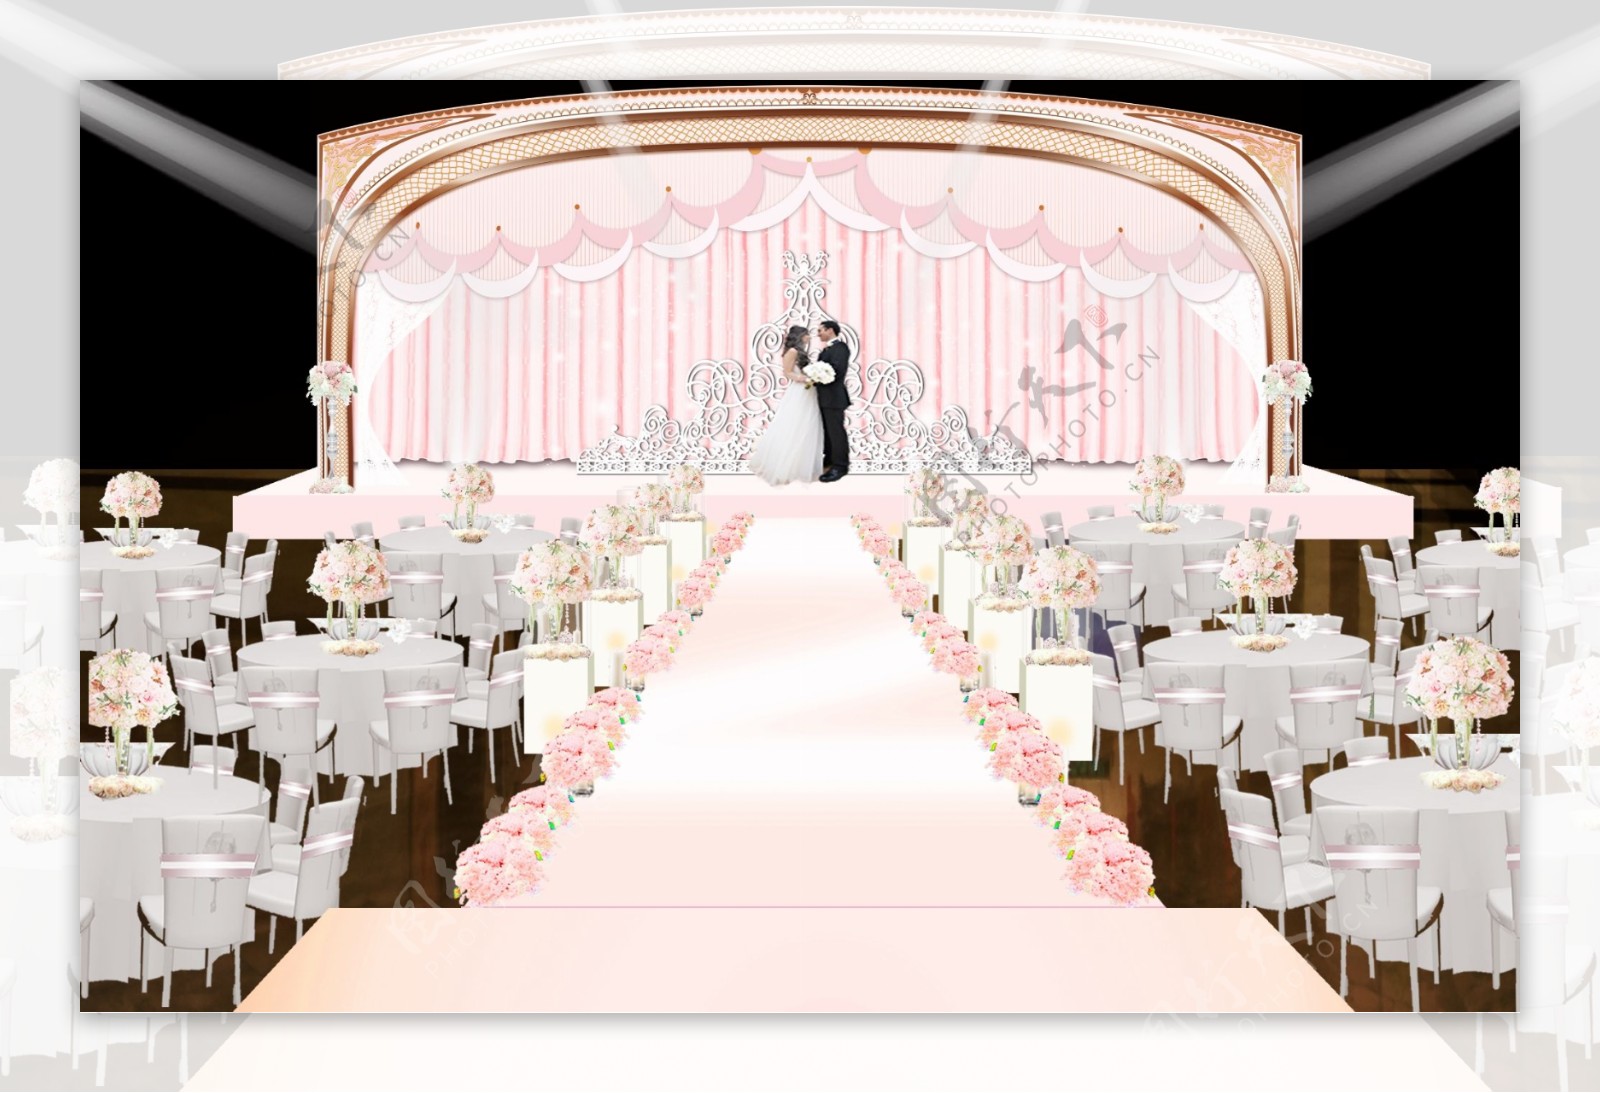 粉白色浪漫皇冠婚礼仪式区效果图